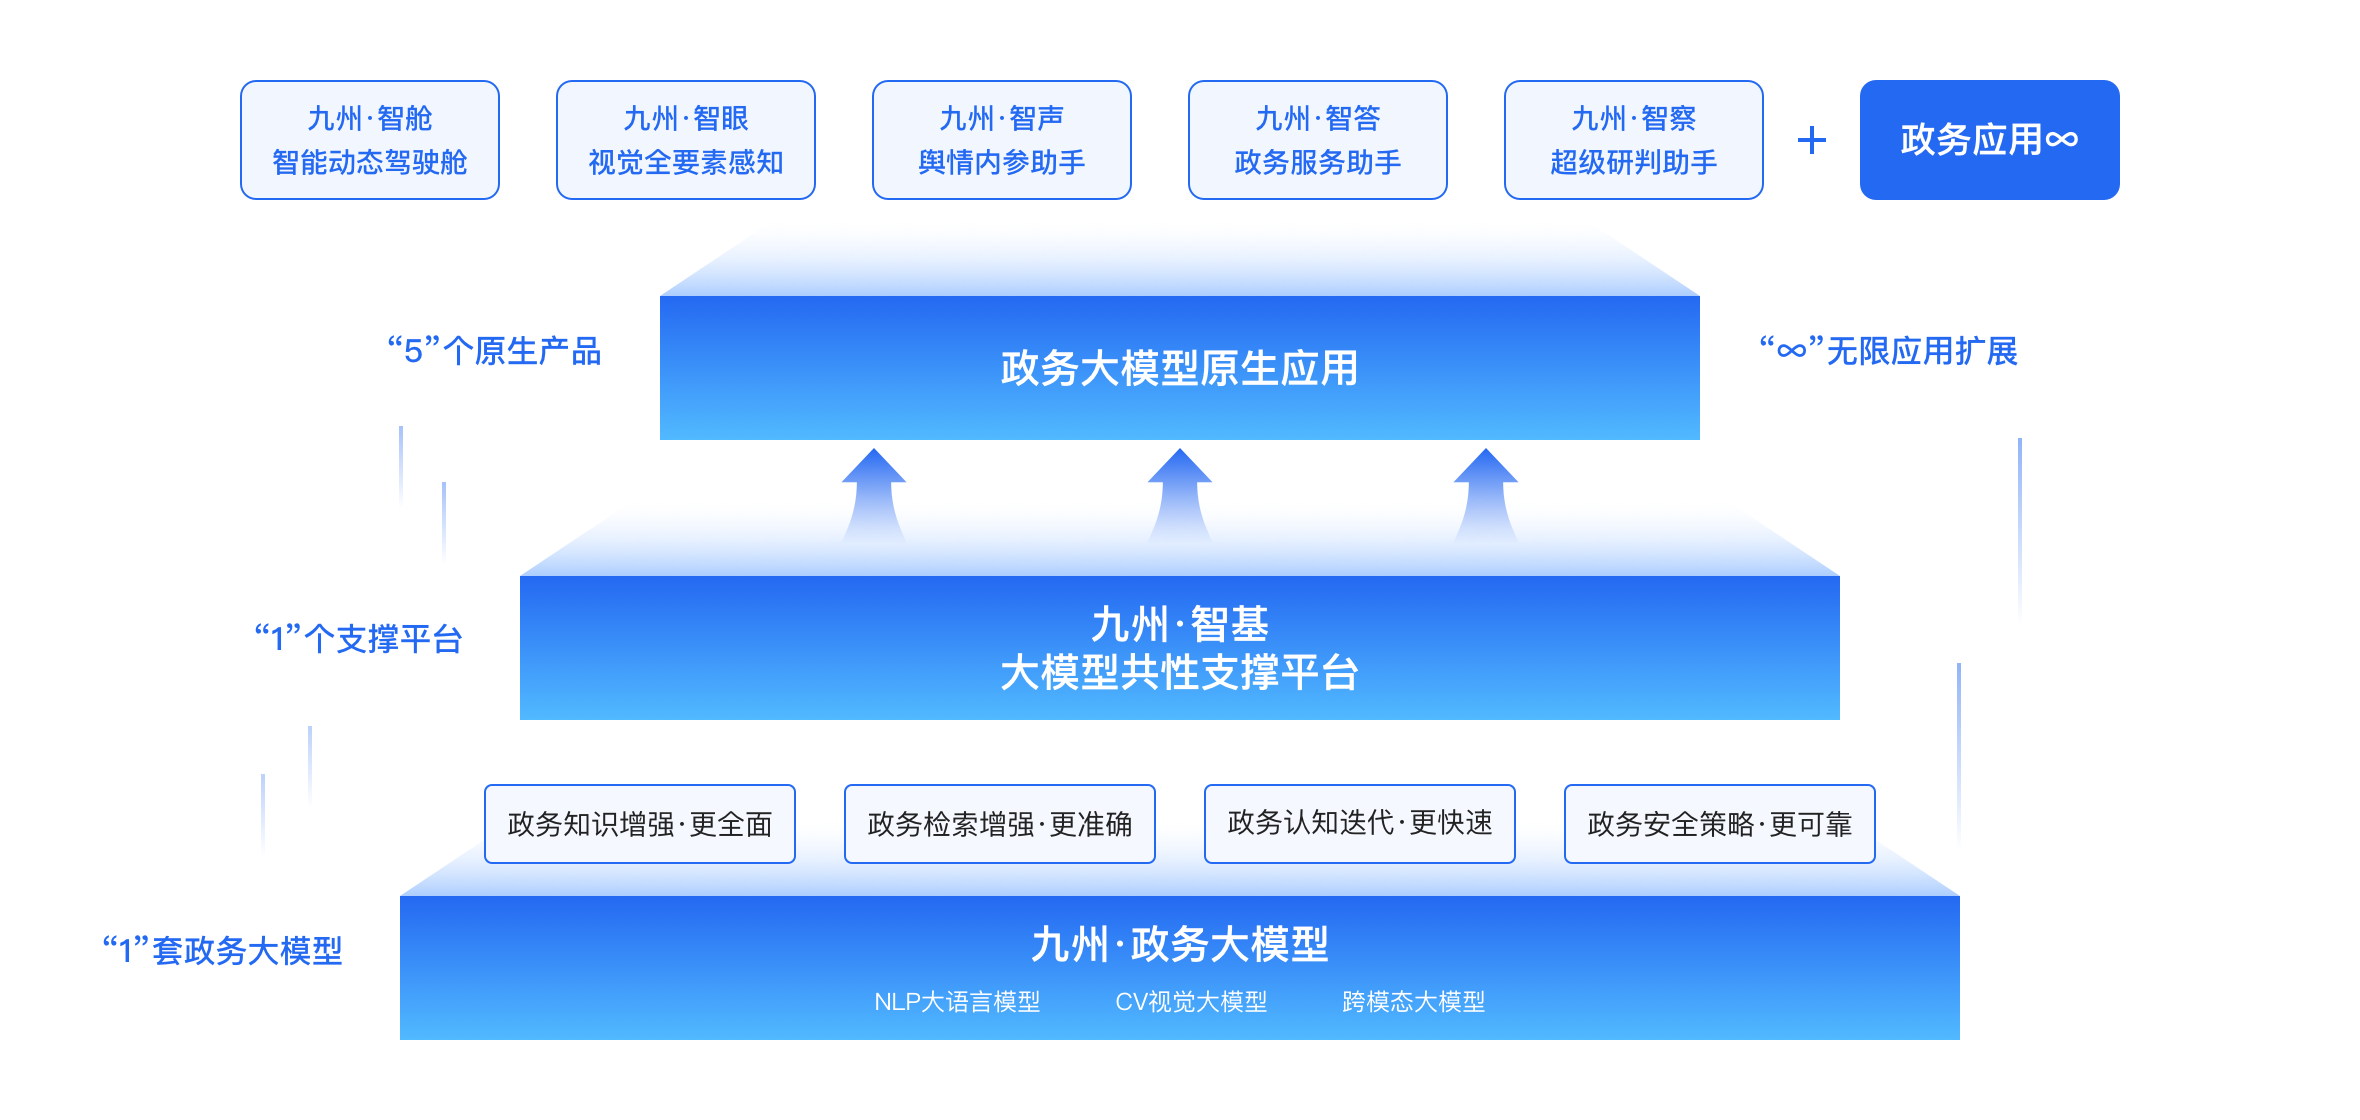 九州 · 政务大模型“1+1+5+∞”原生产品体系